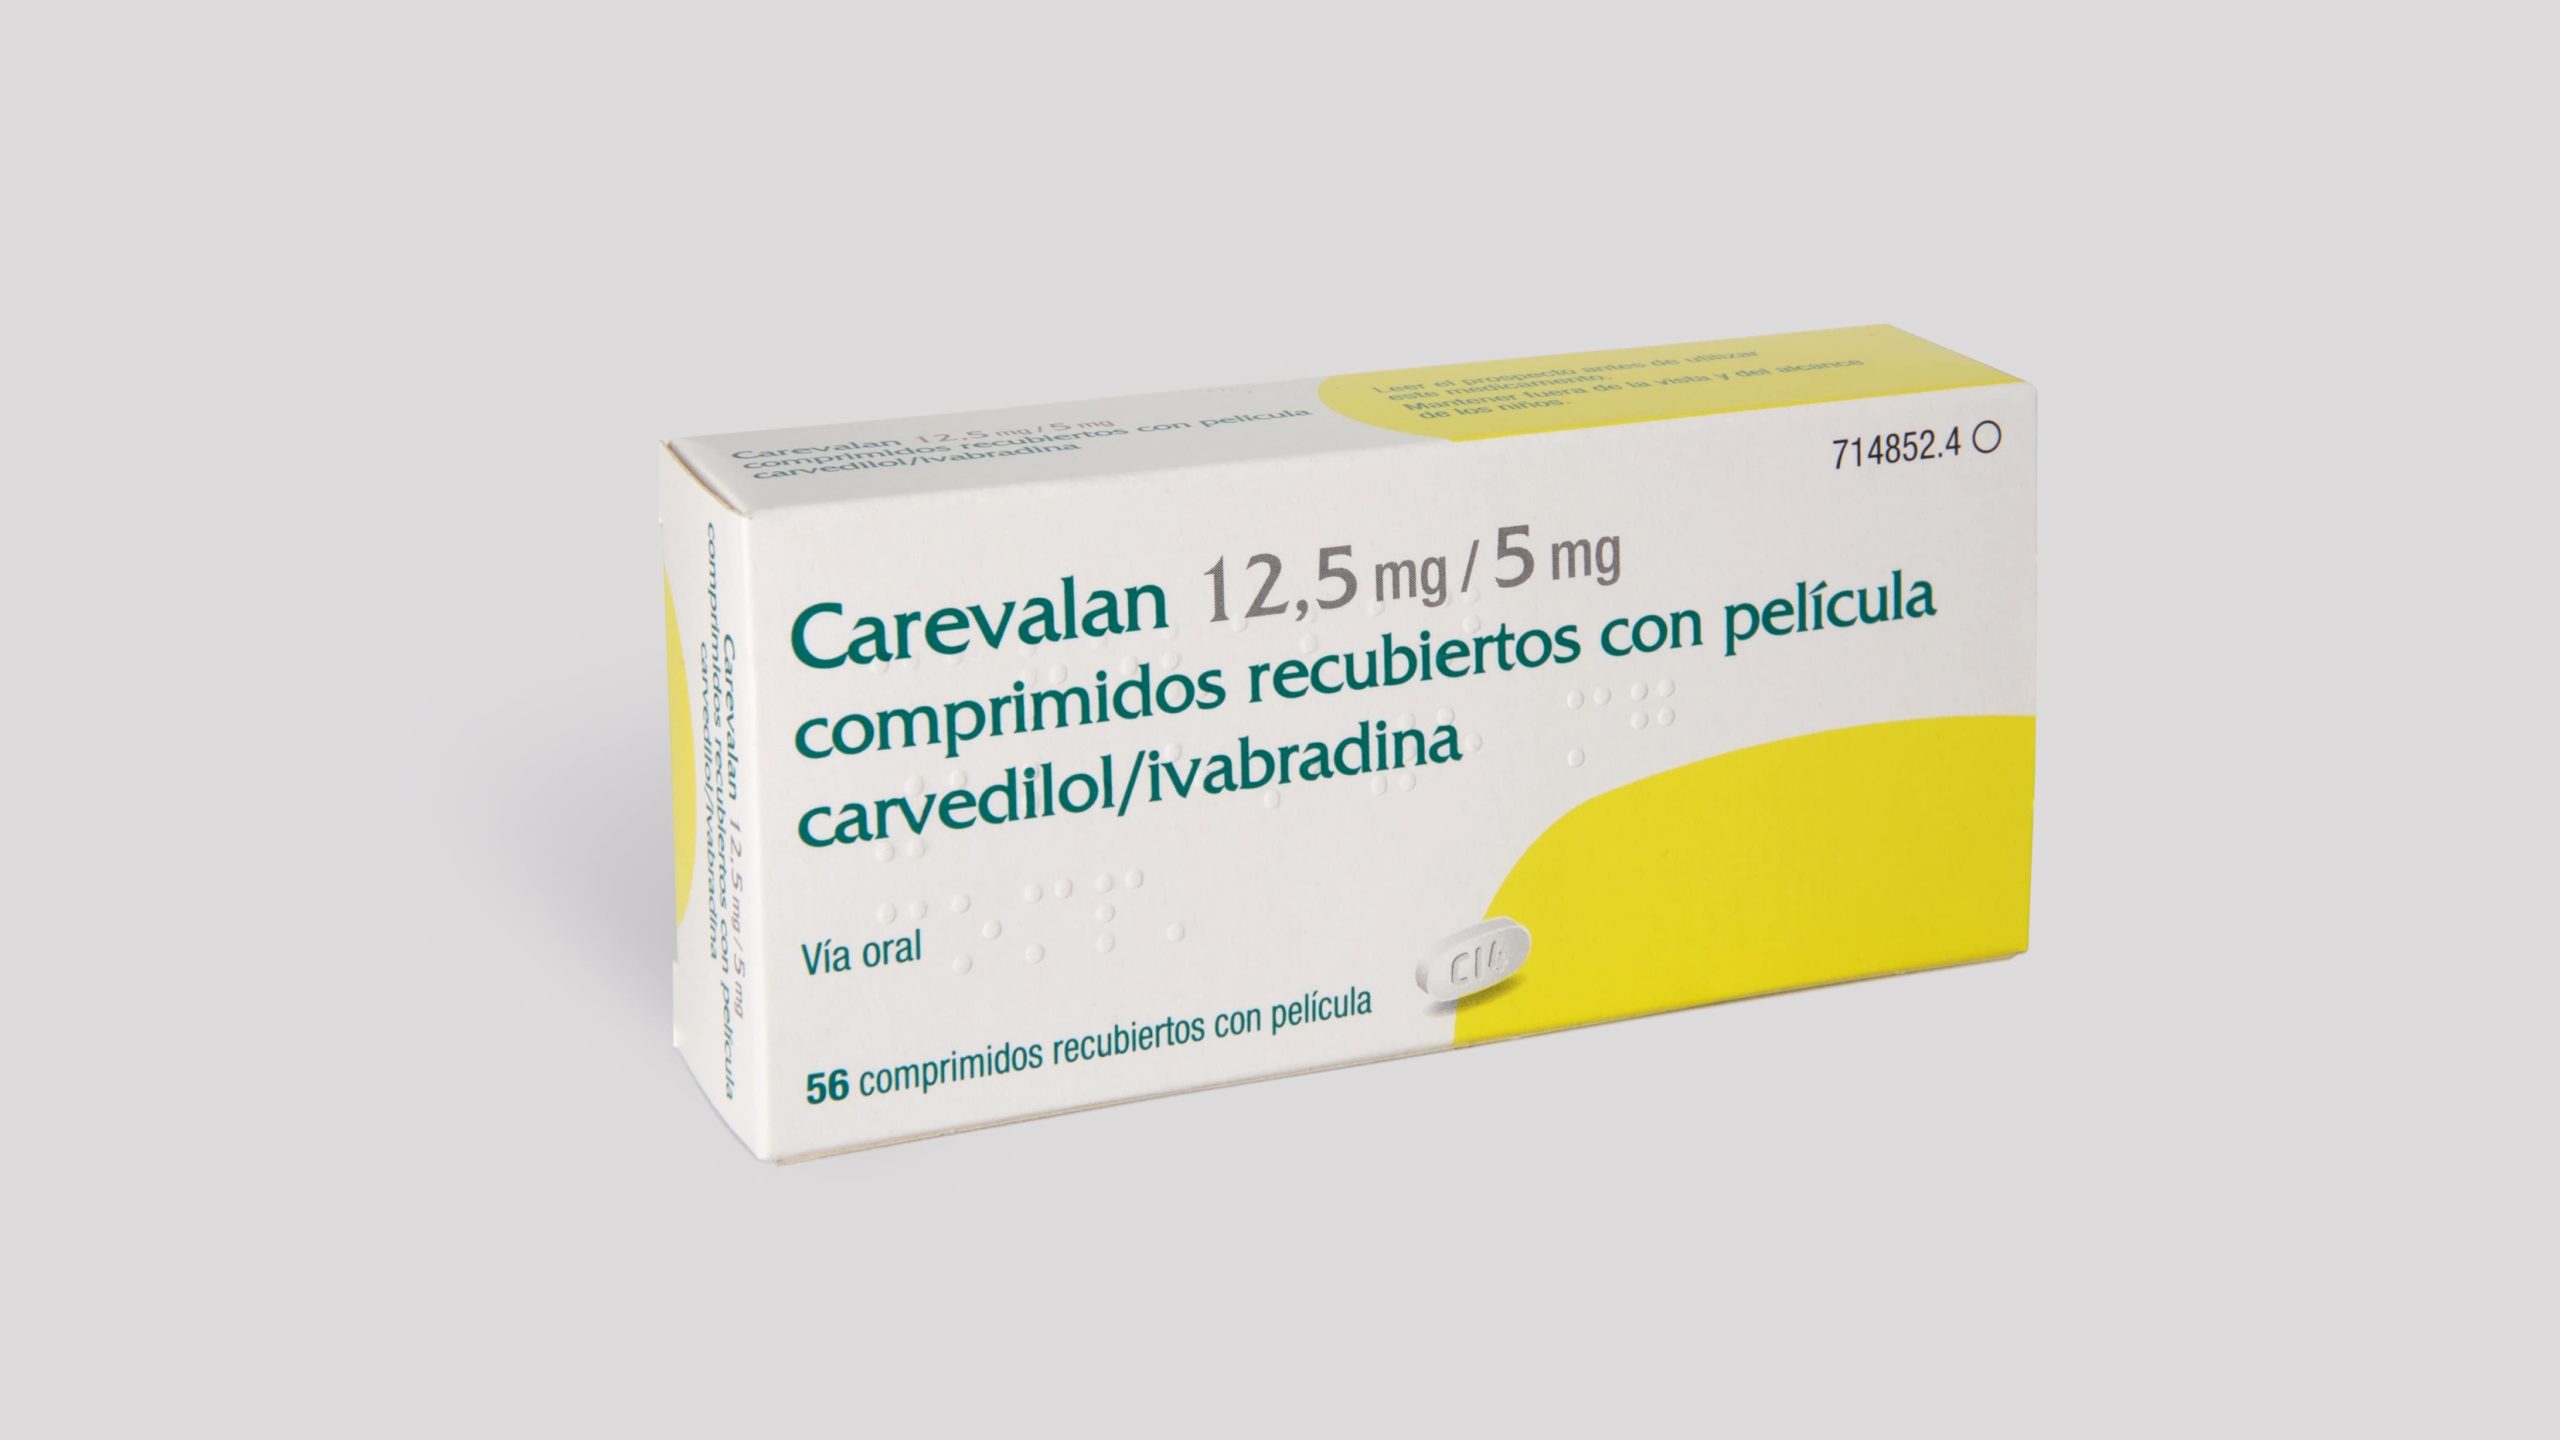 Carevalan 12,5 mg/5 mg